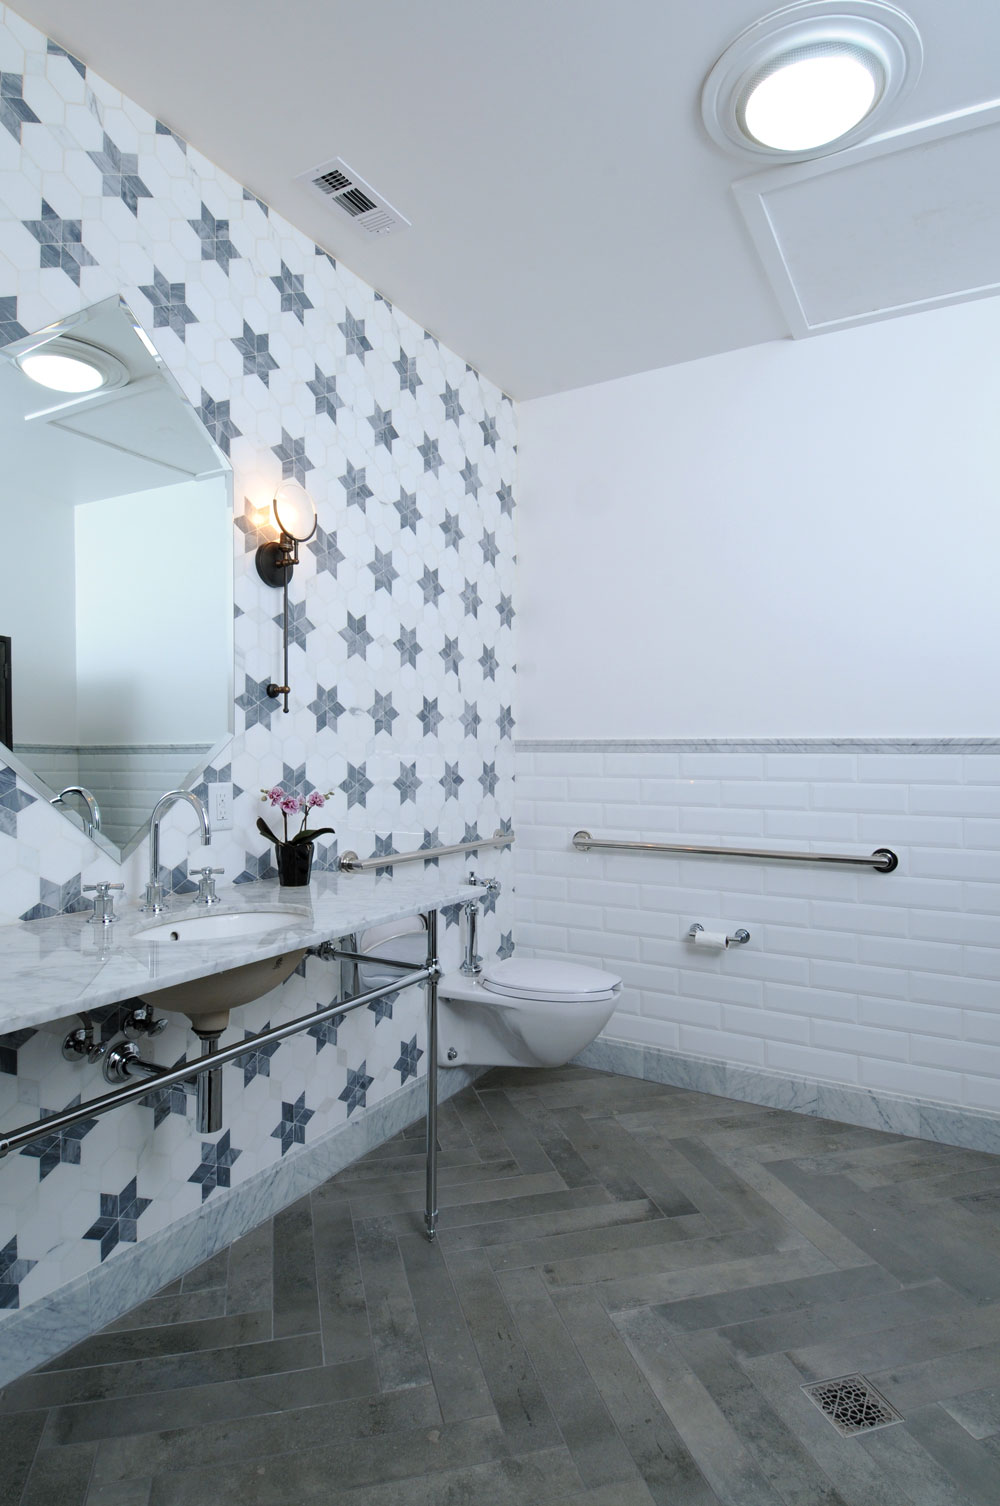 9-Waterford-star-tile-bathroom-Saxum.jpg